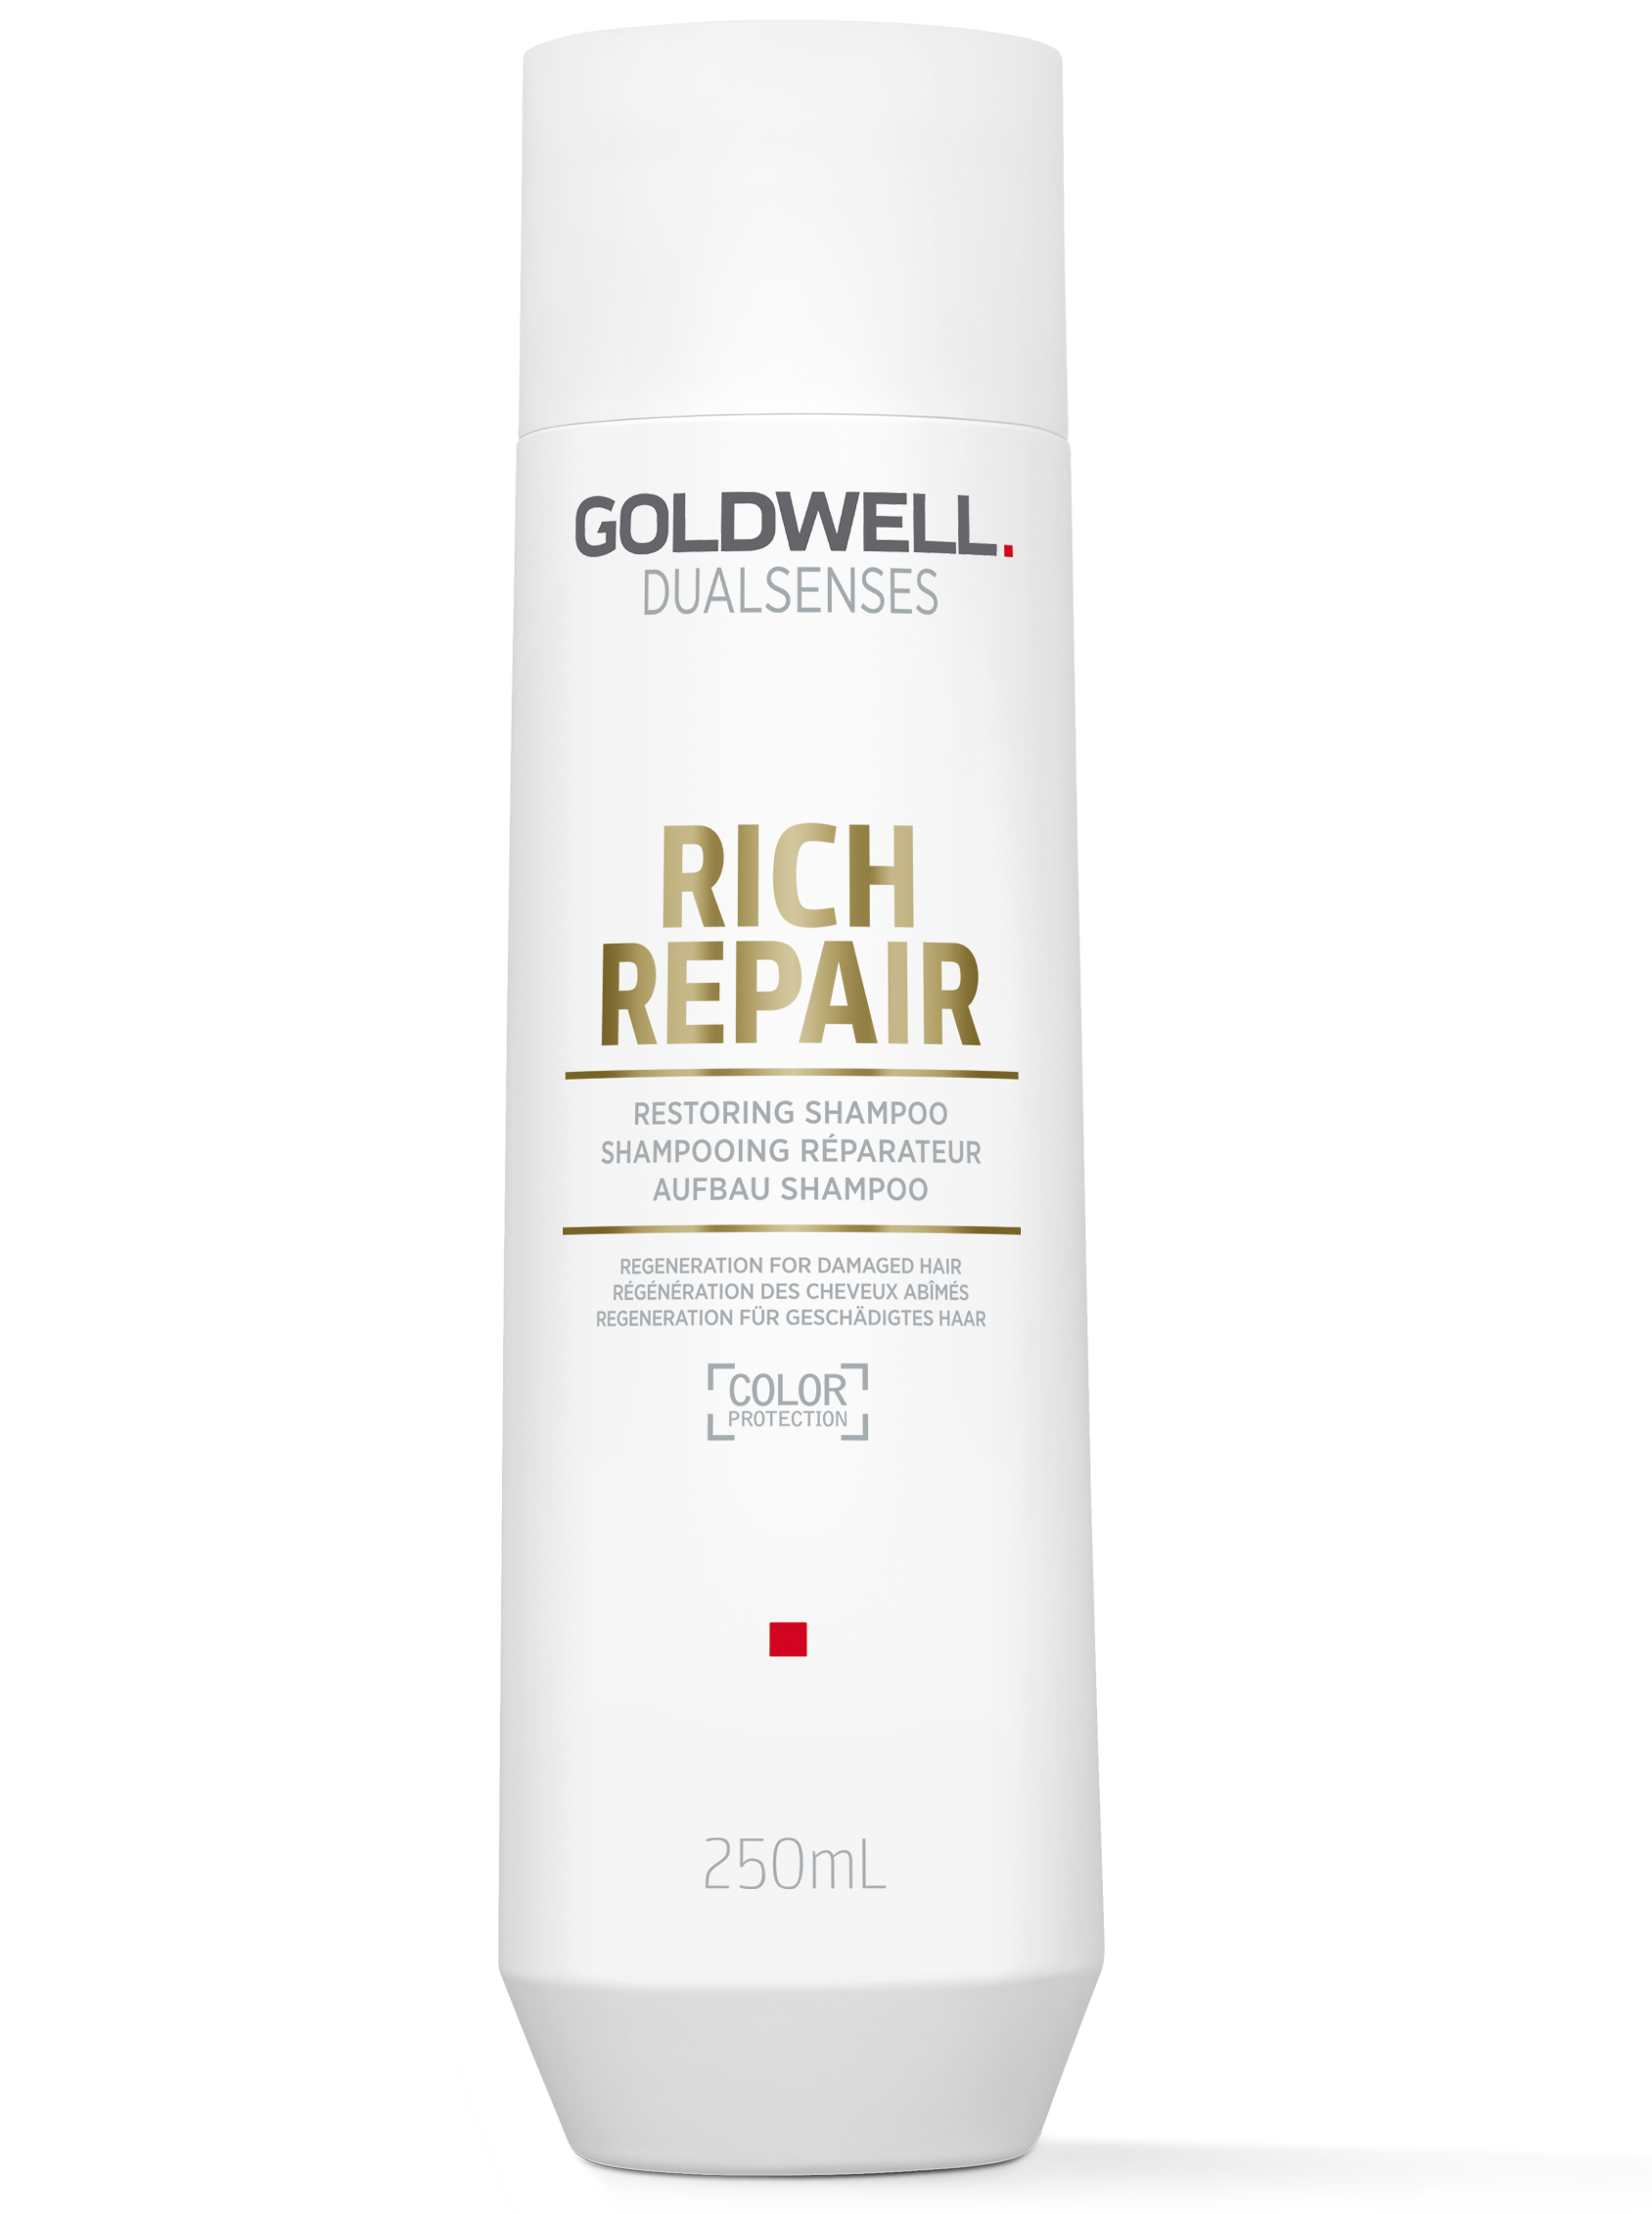 szampon goldwell rich repair cena